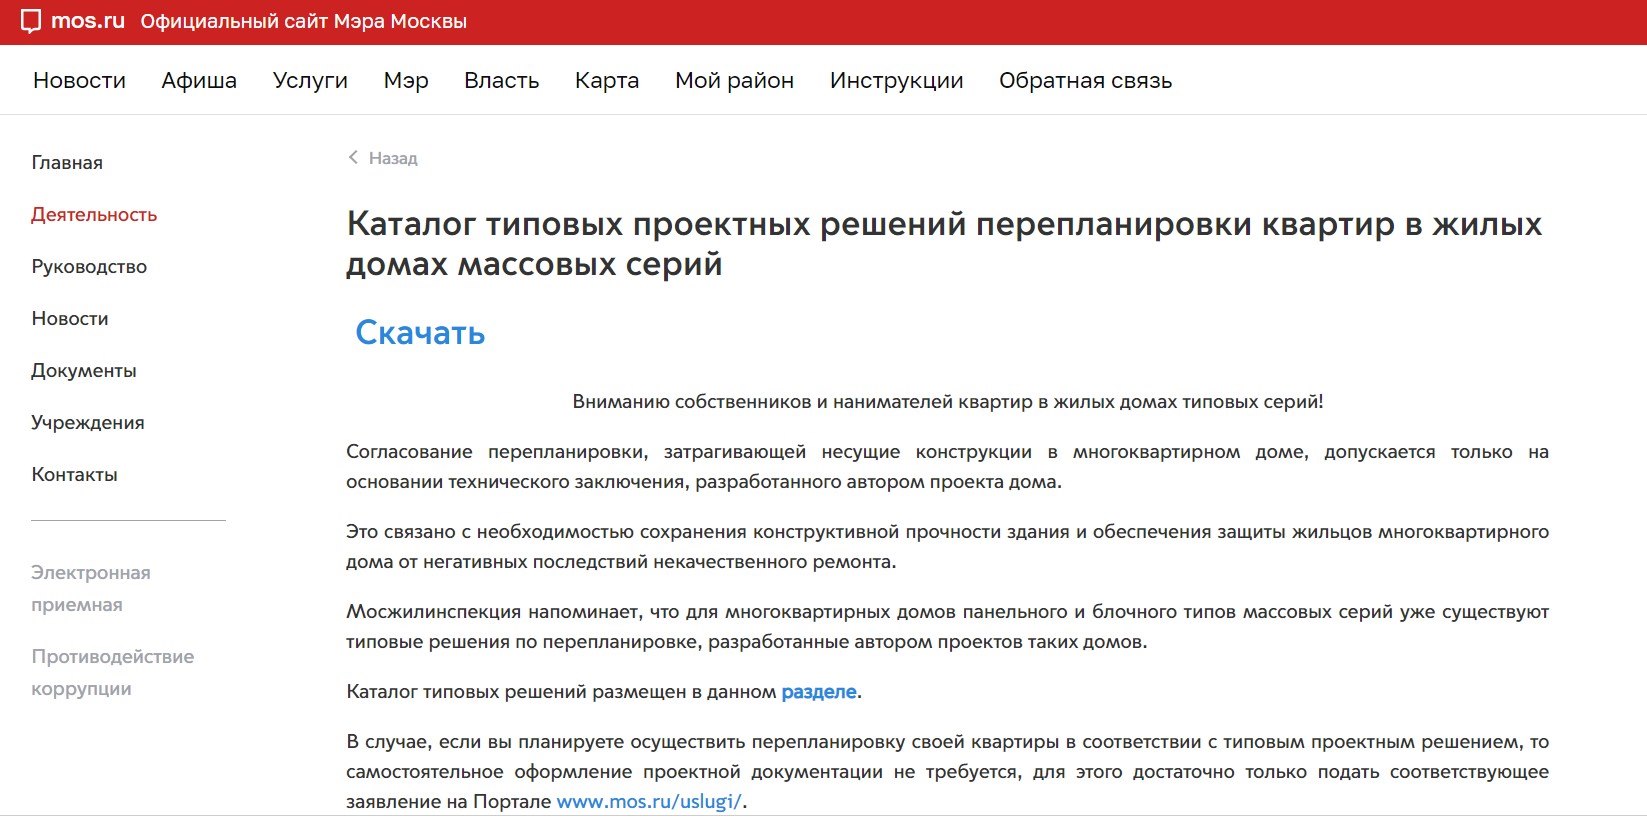 Каталог типовых проектных решений перепланировки можно скачать на сайте Мэра Москвы. Фото: www.mos.ru